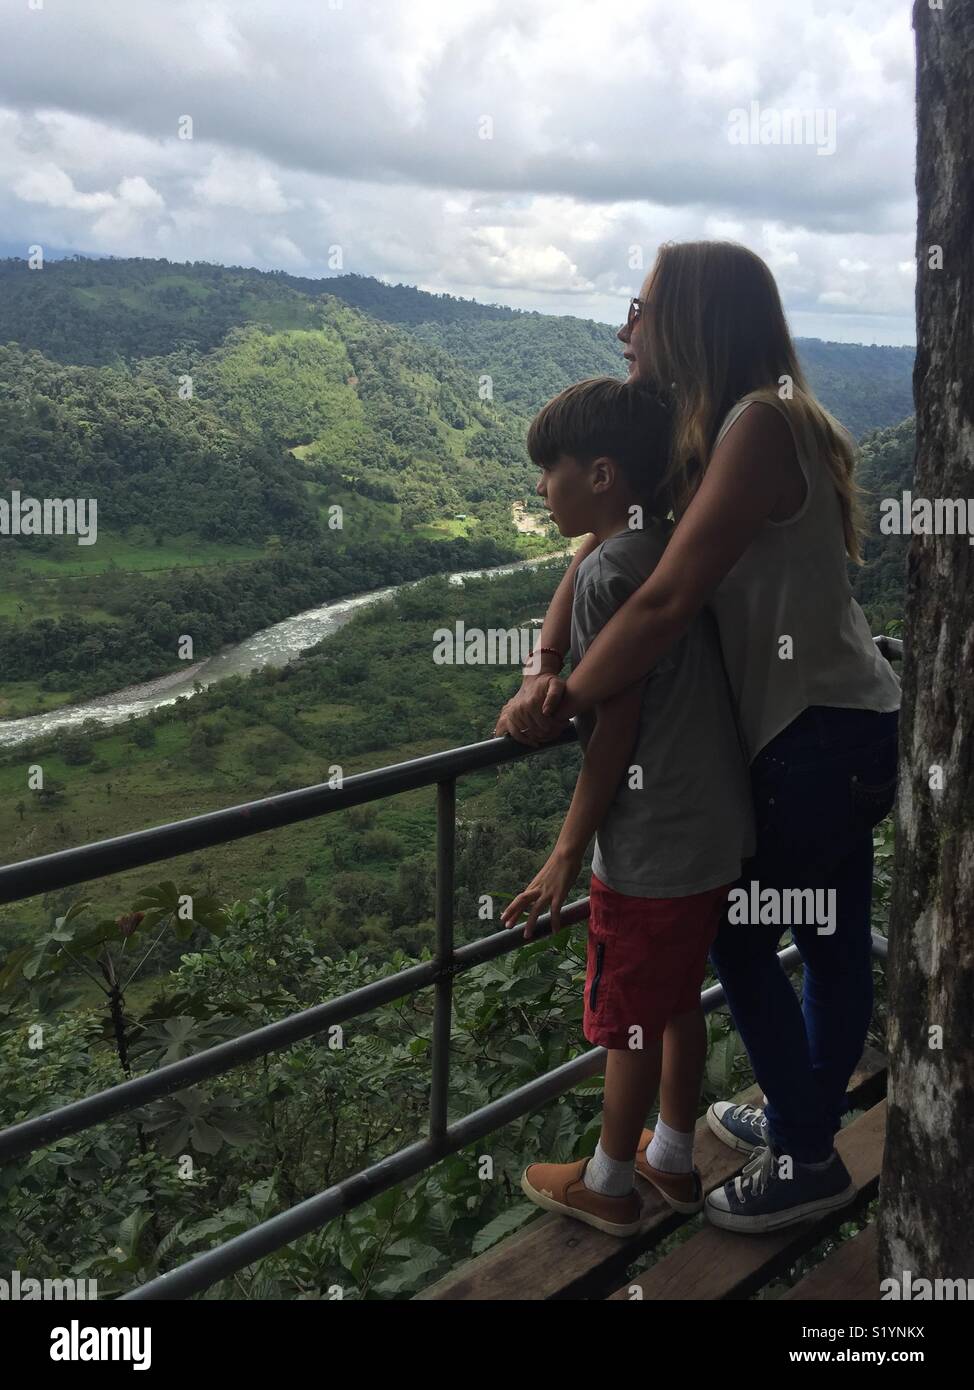 Una madre y su hijo contemplando la naturaleza, observan el río y la montaña del bosque nuboso en Los Bancos en Ecuador Stock Photo